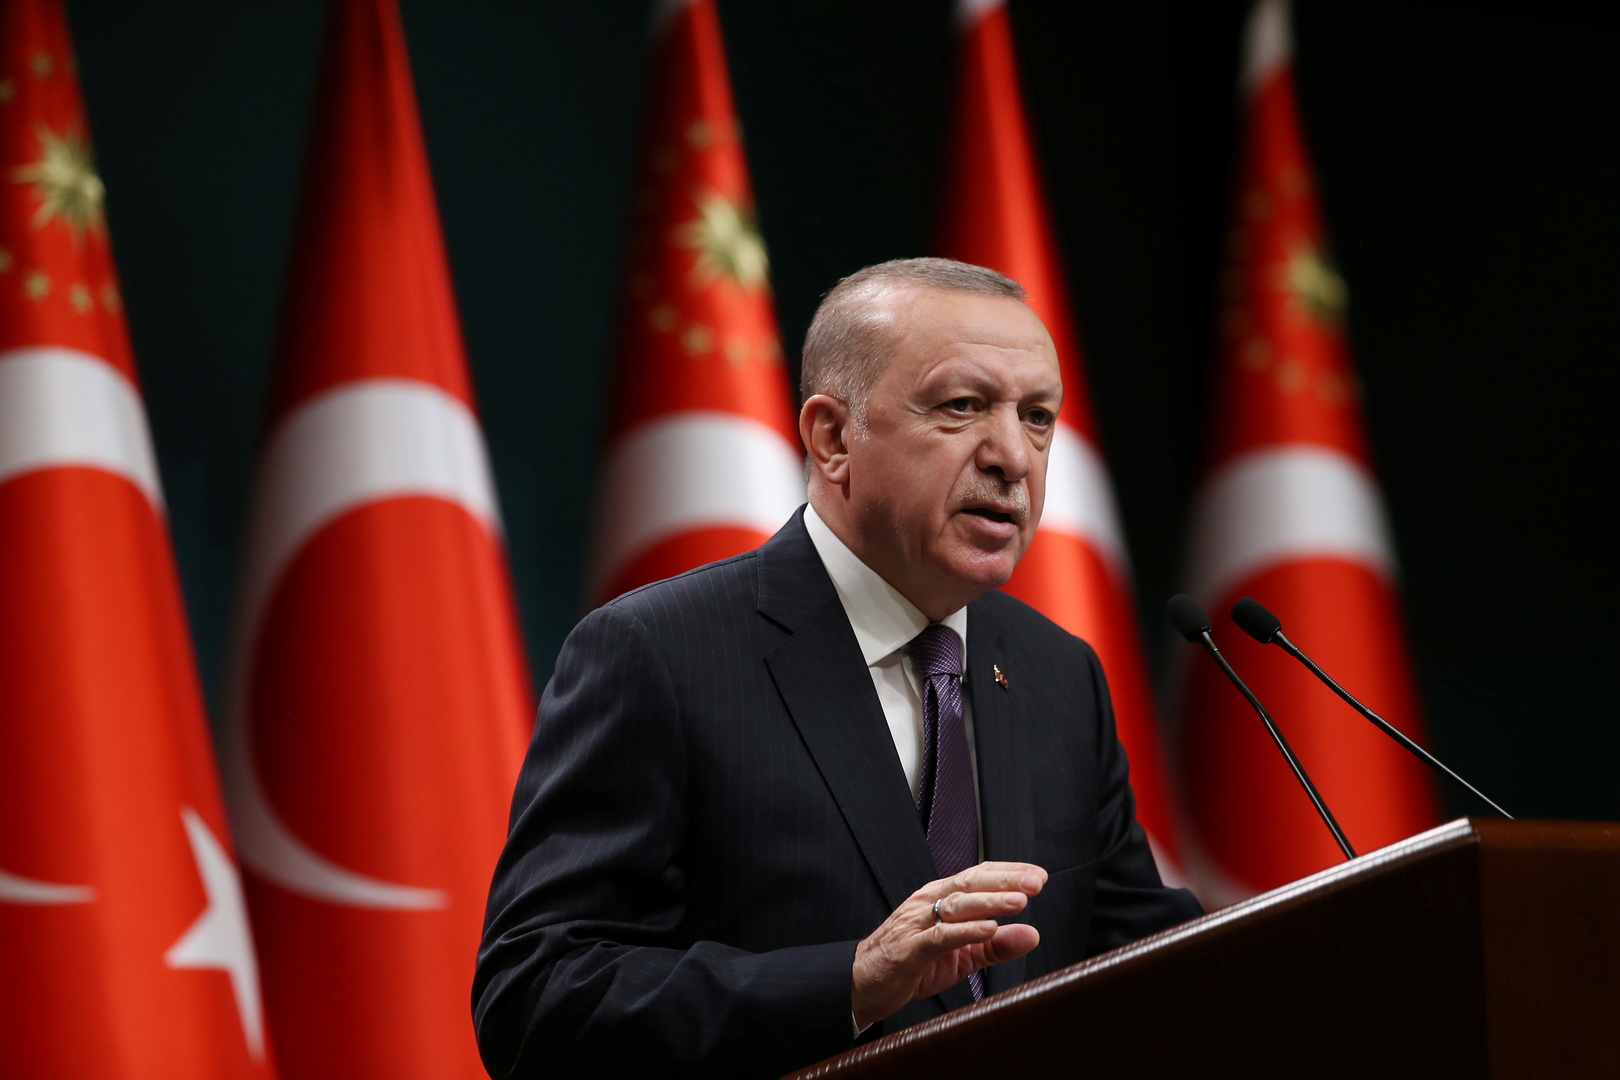 أردوغان لروحاني: تركيا أبدت رد فعلها بأشد طريقة على اعتداءات إسرائيل وظلمها في فلسطين